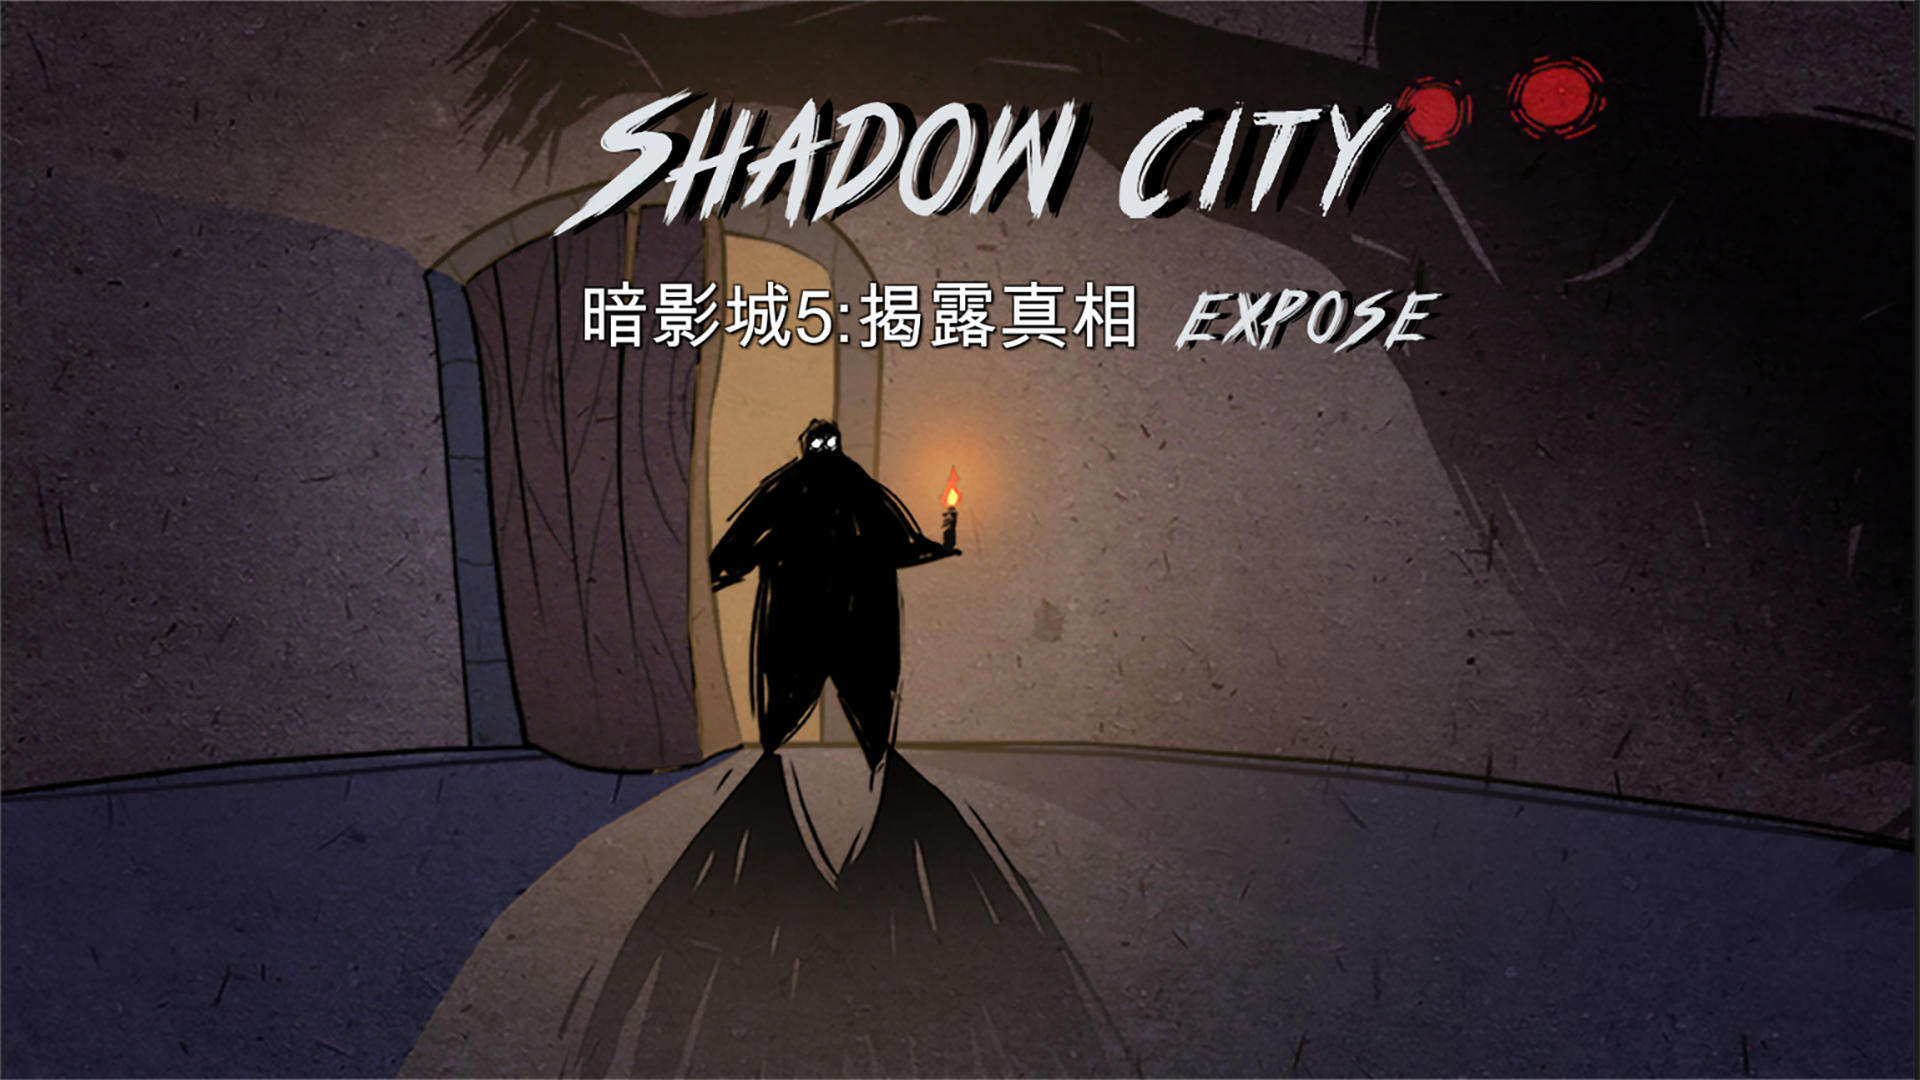 Banner of Shadow City5: Expor 